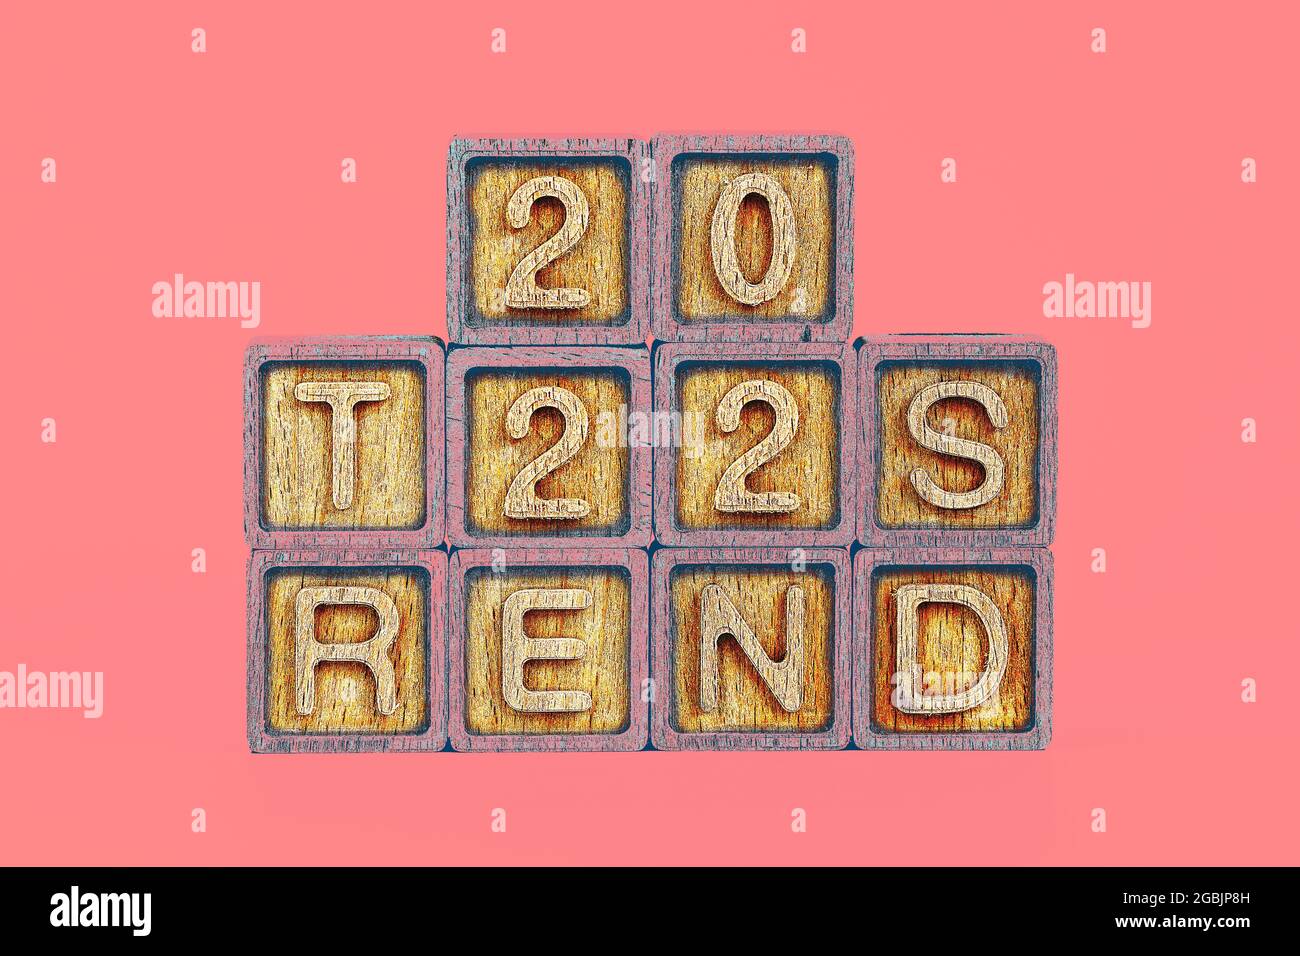 2022 tendenze tema. cubi di legno con la parola 'tendenze' e numeri '2022', su sfondo corallino Foto Stock